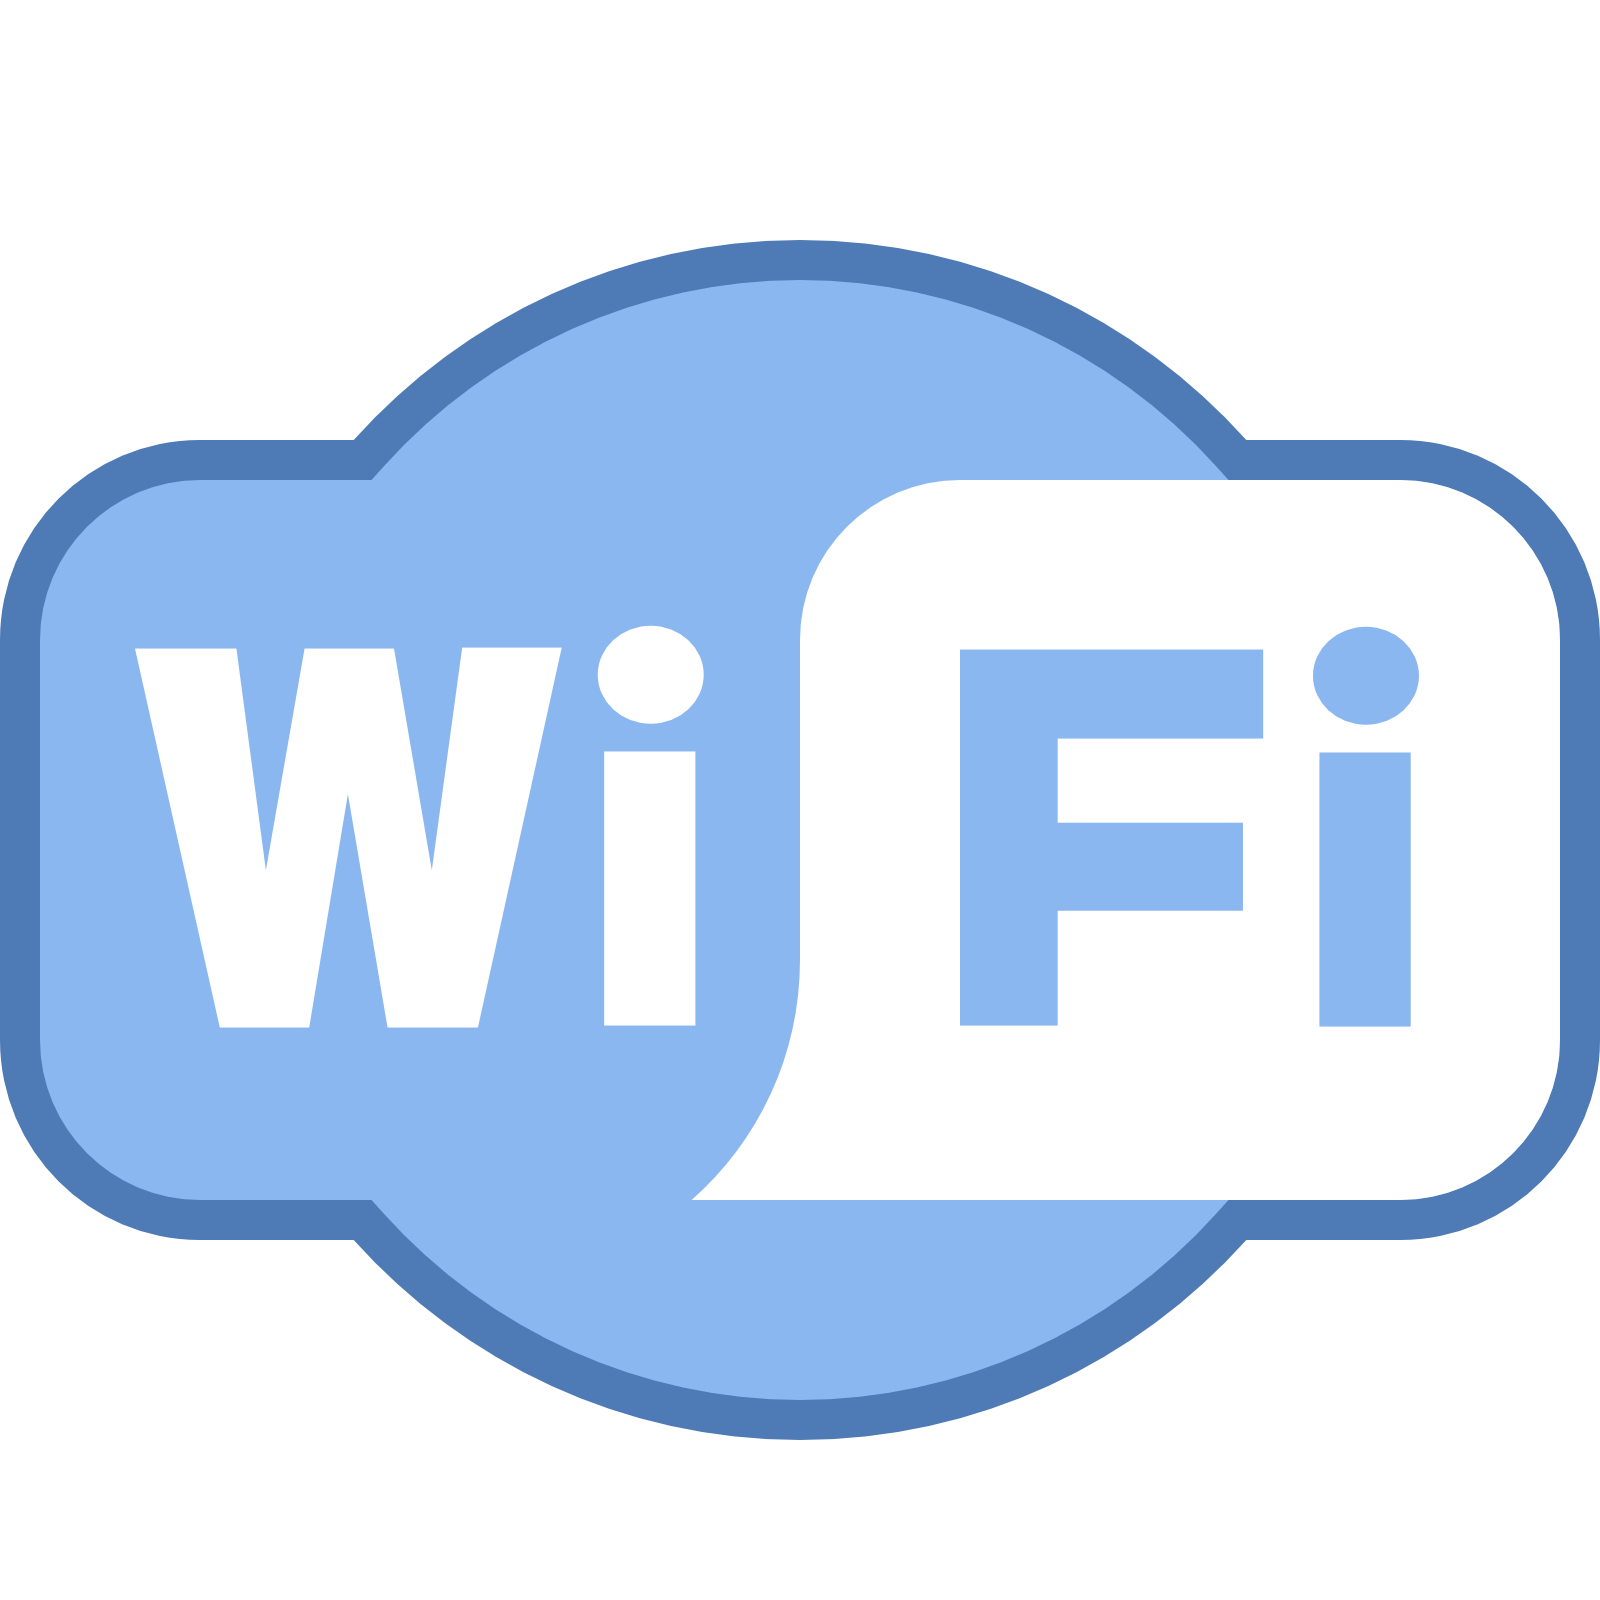 Wi-Fi Logo - Wi-Fi PNG logo images free download